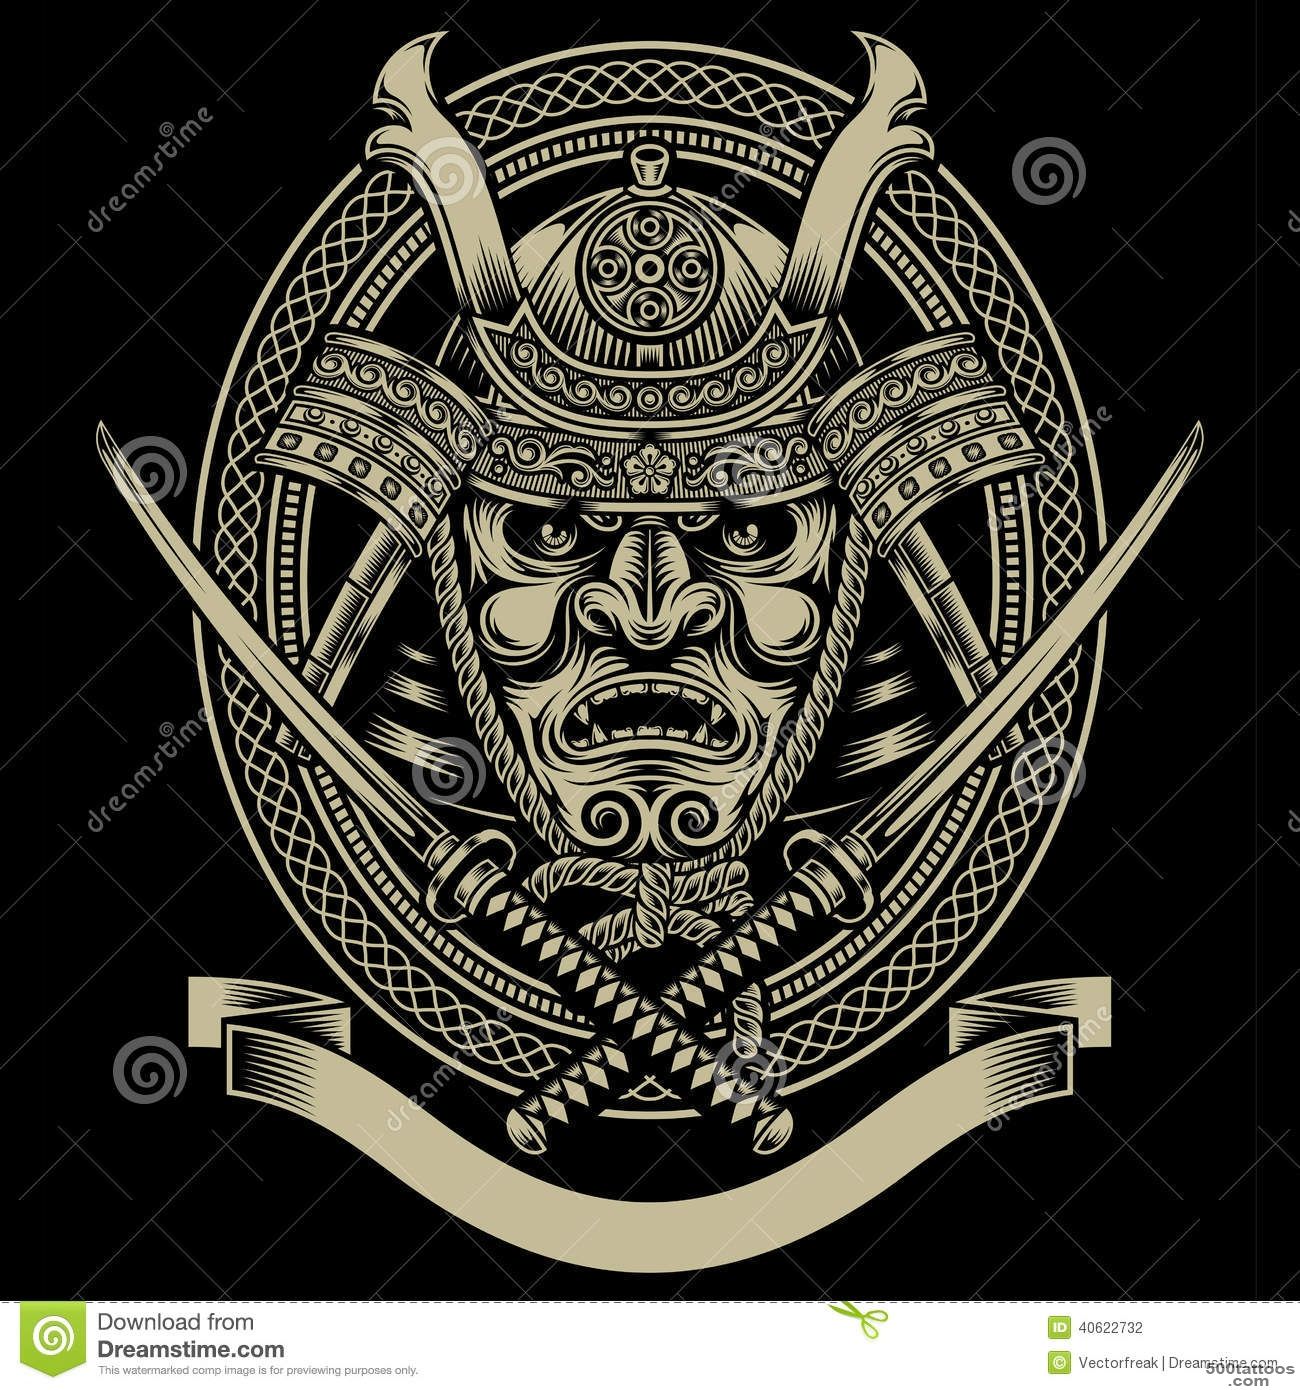 Top Katana Espada Samurai Images for Pinterest Tattoos_40